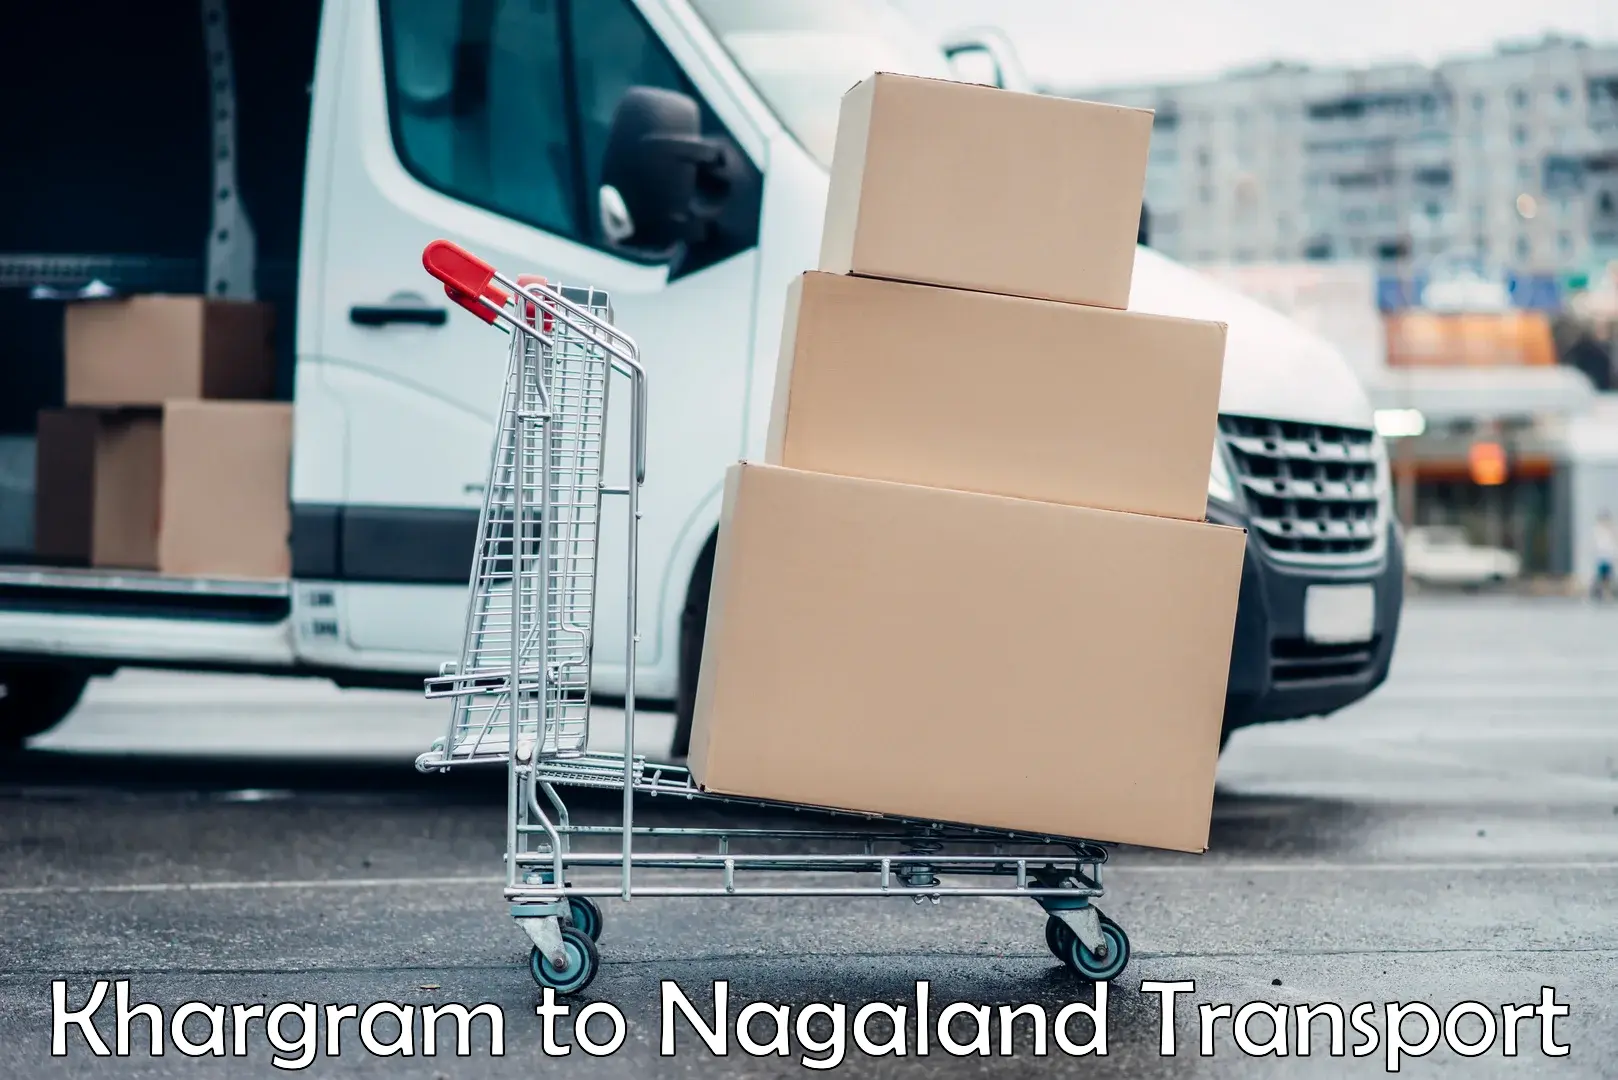 Vehicle transport services Khargram to Nagaland